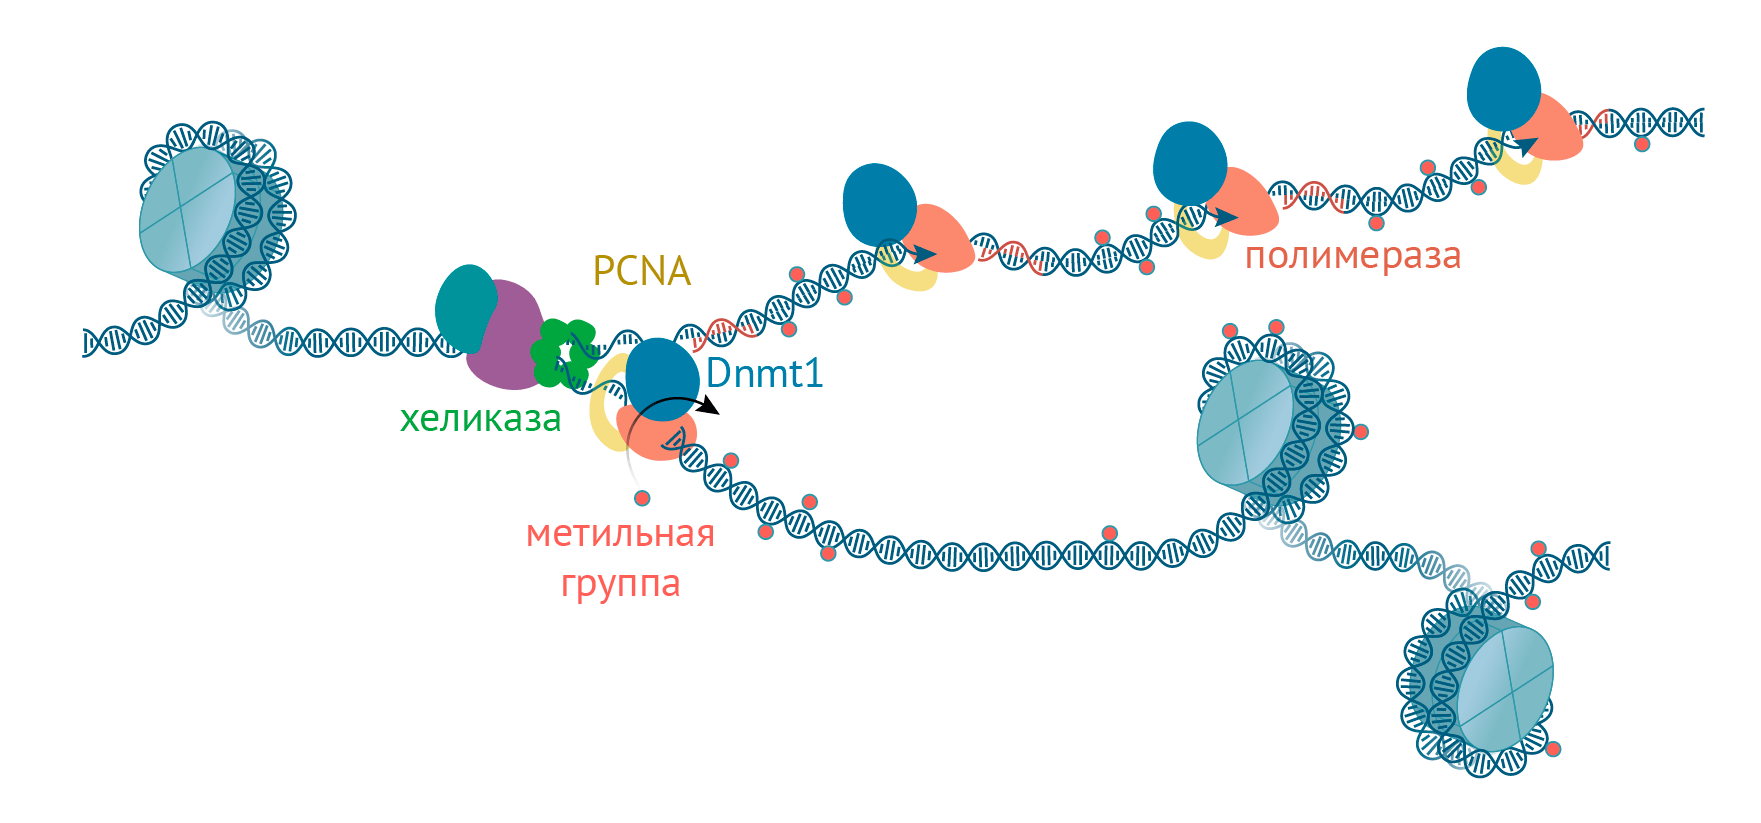 Поддержание метилирования ДНК во время репликации